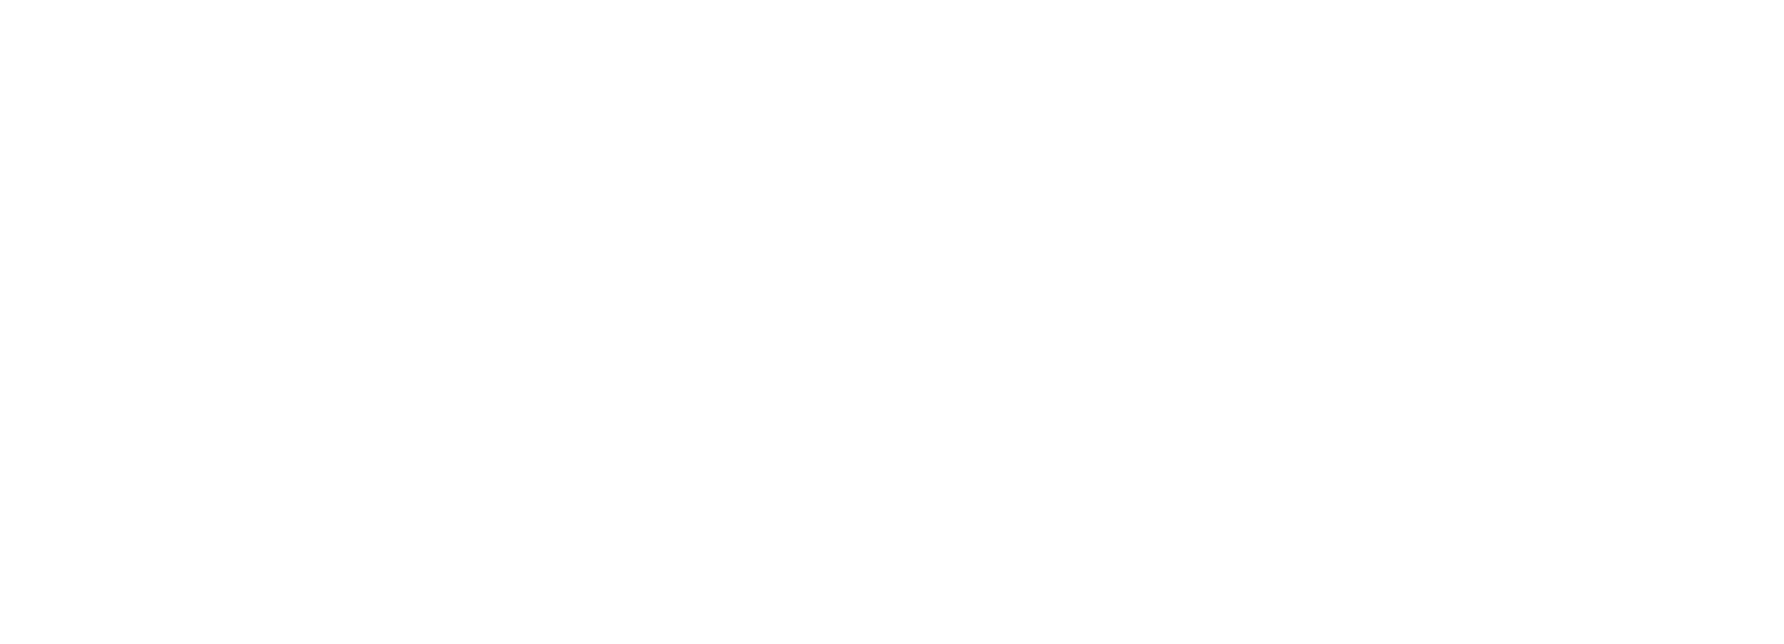 Real Estate Development Summit